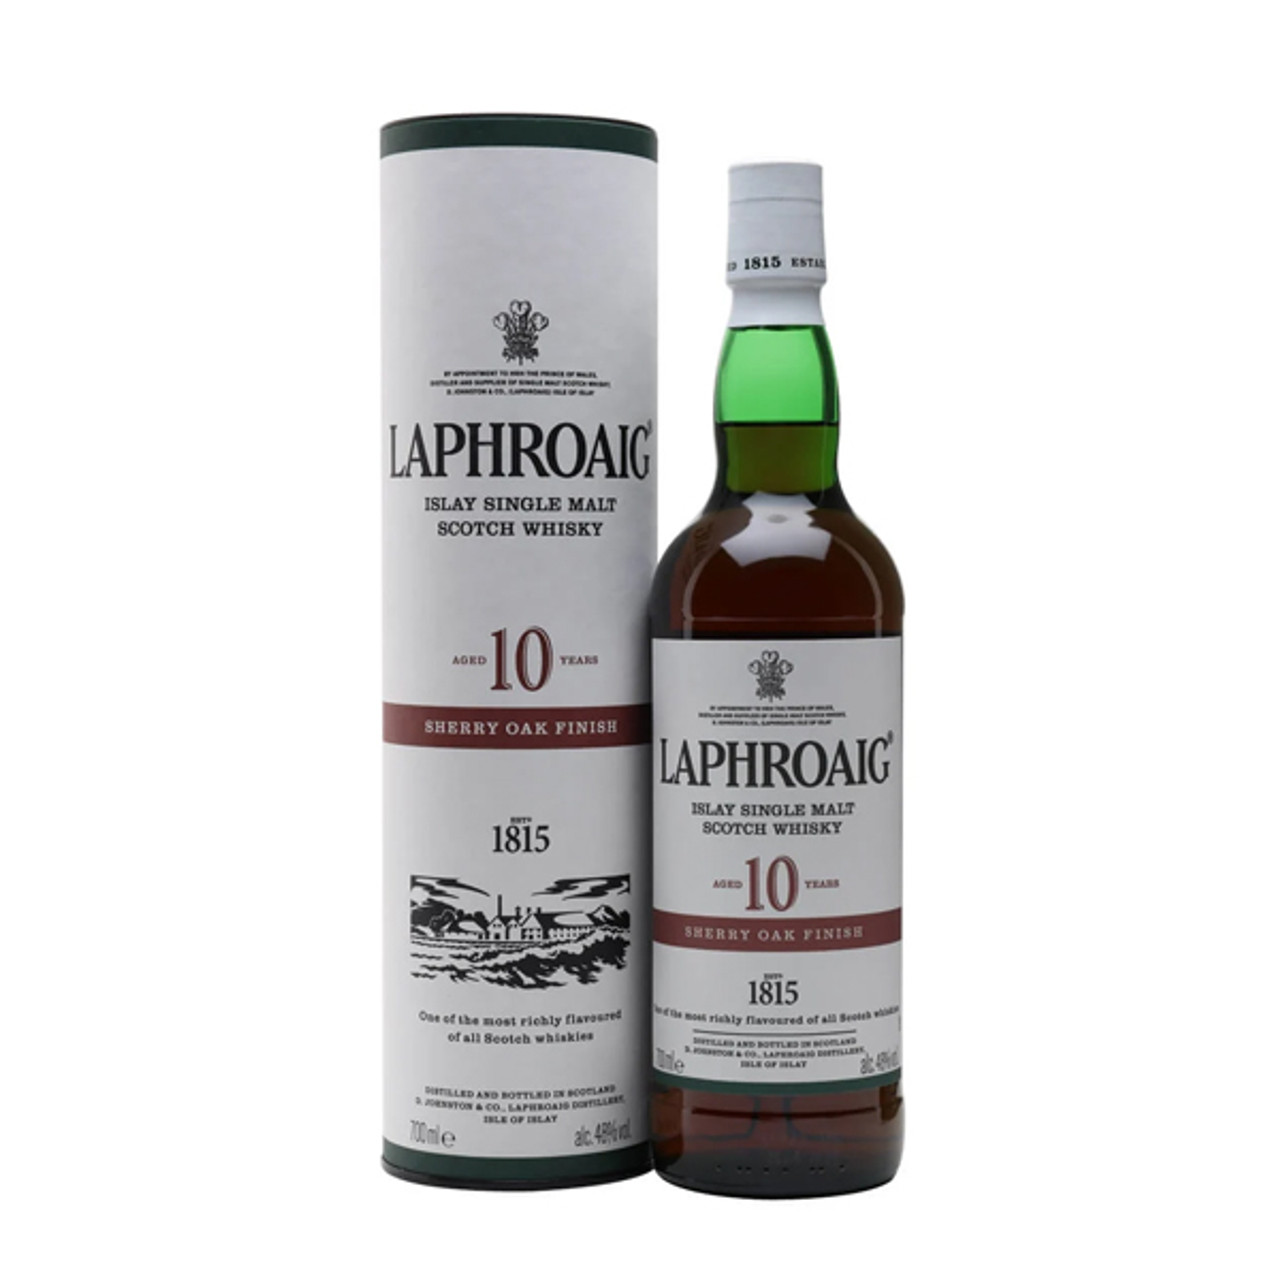 Laphroaig 10 Year Old Sherry Oak Finish Scotch Whisky : The Whisky